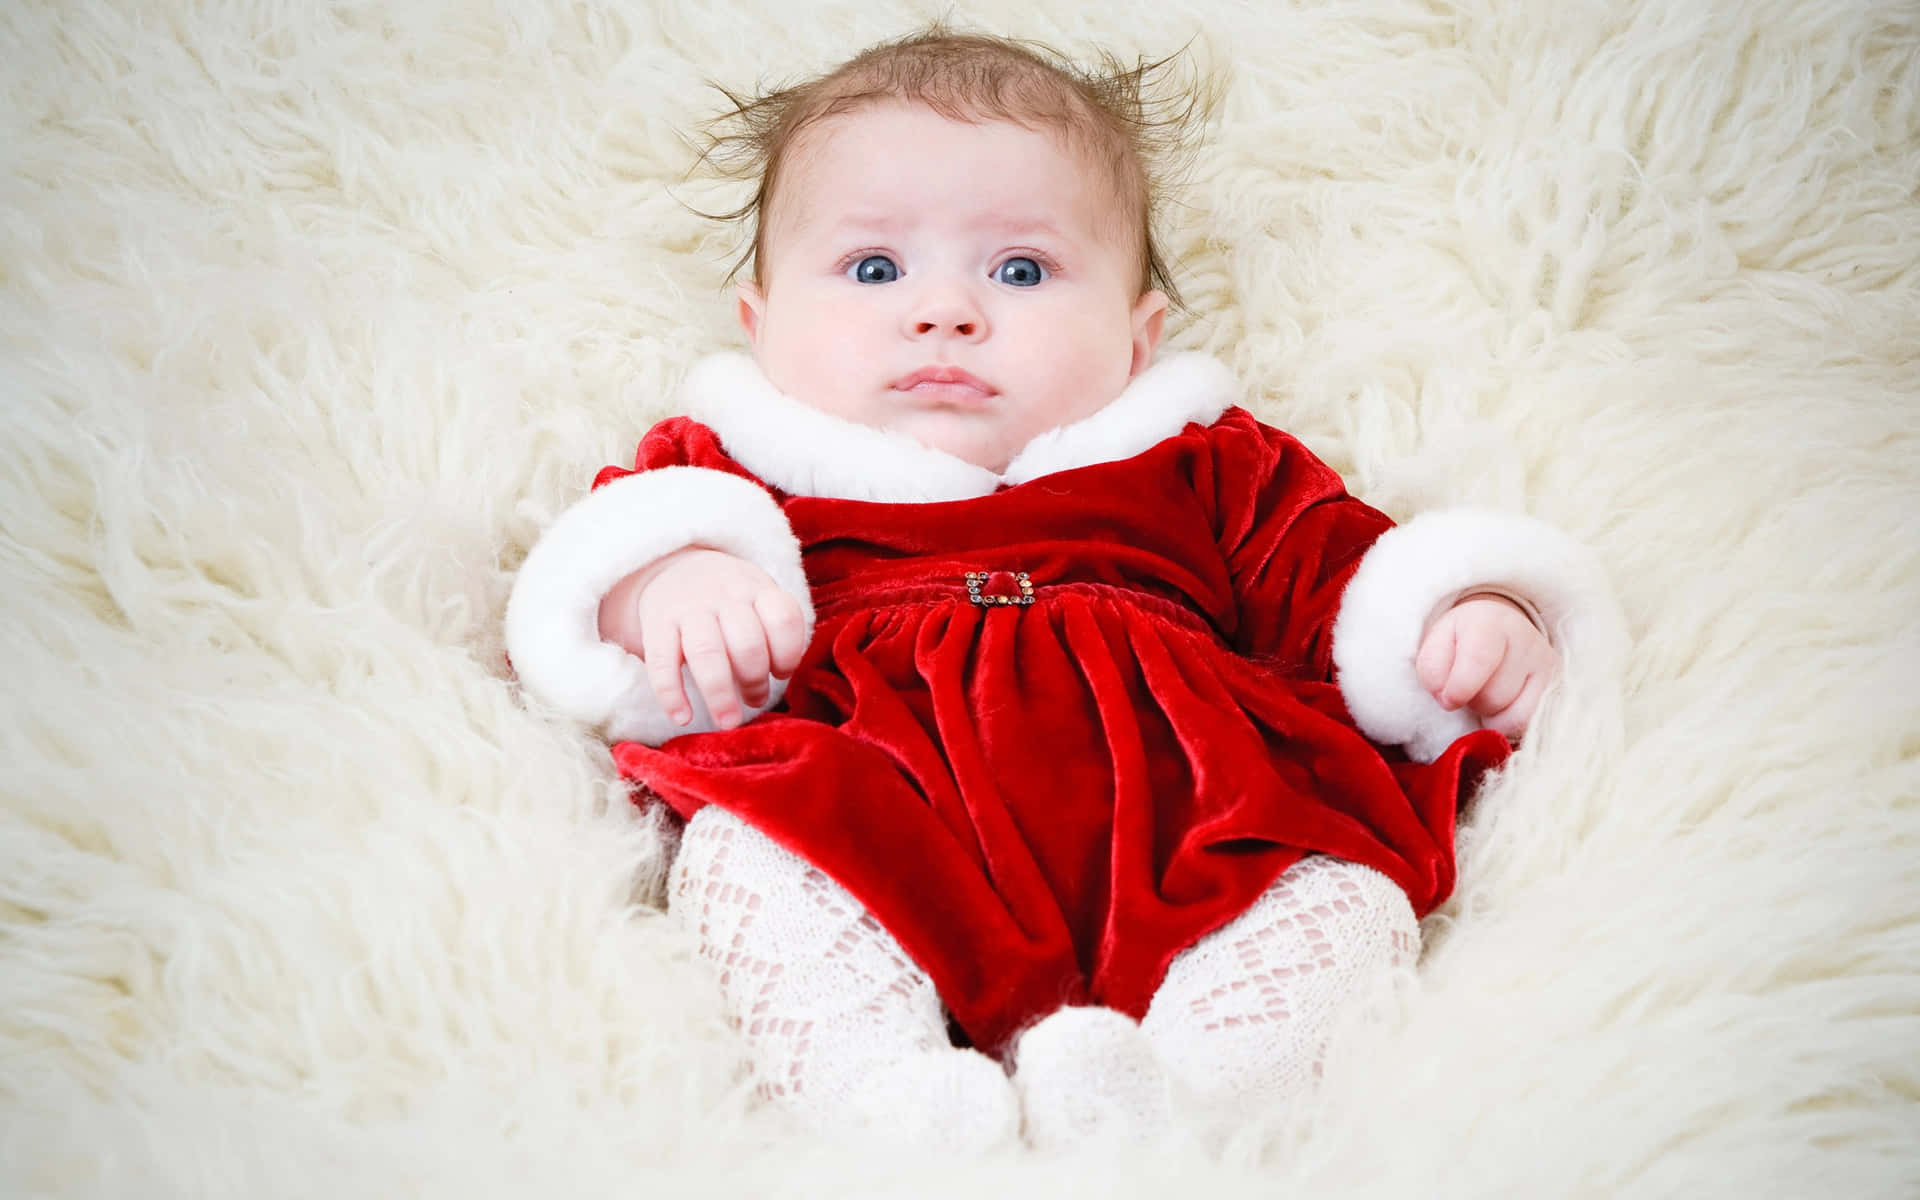 Unbambino In Un Costume Da Babbo Natale Rosso Sdraiato Su Un Tappeto Di Pelliccia Bianca